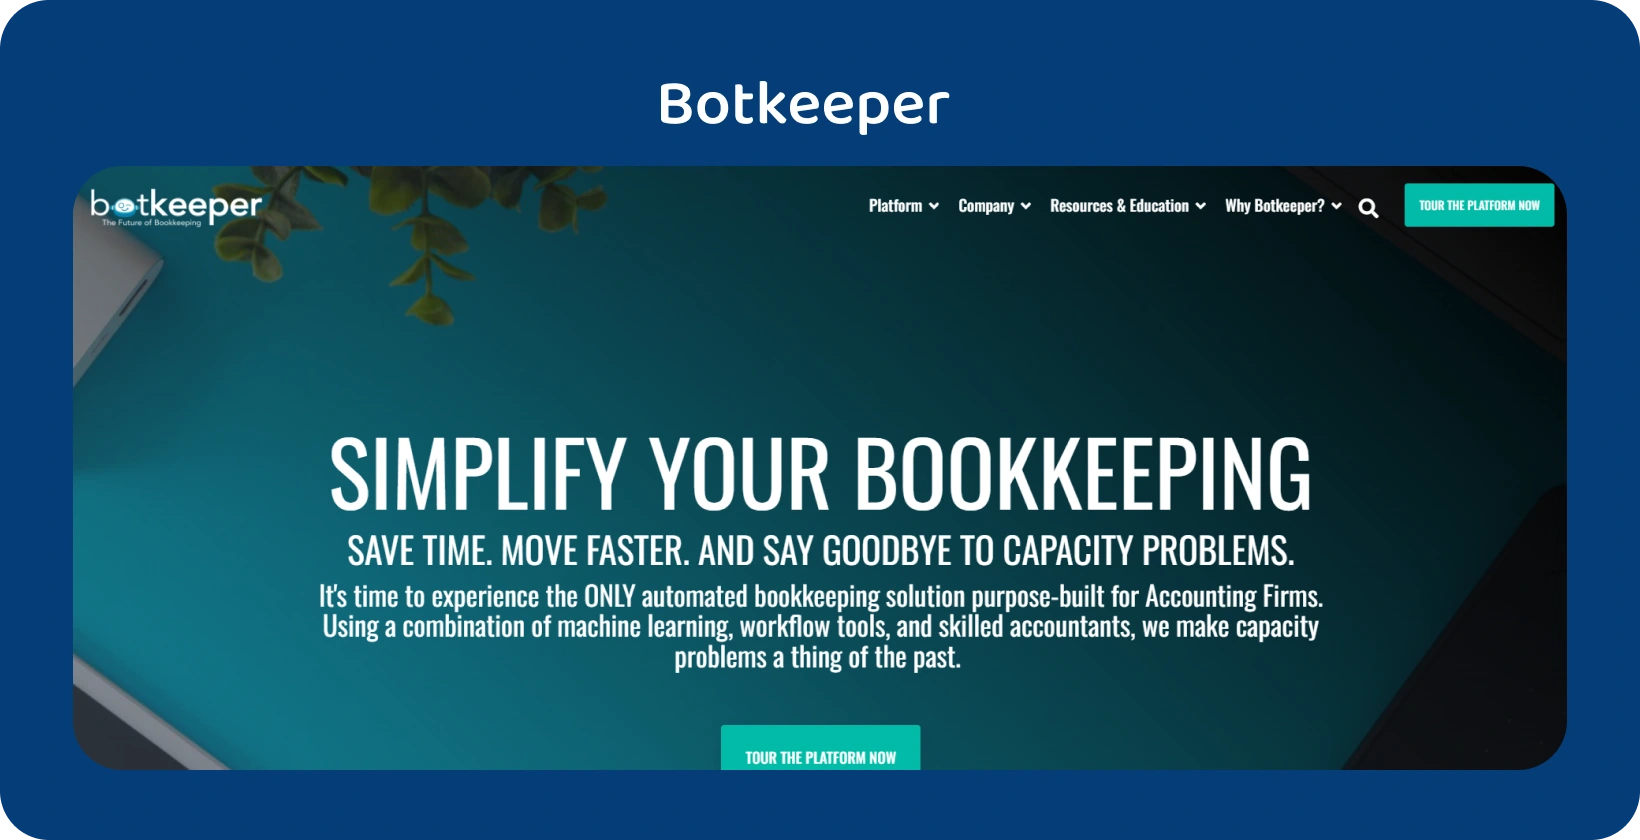 Trang chủ của Botkeeper nhấn mạnh việc đơn giản hóa sổ sách kế toán cho kế toán thông qua công nghệ tự động hóa của nó.